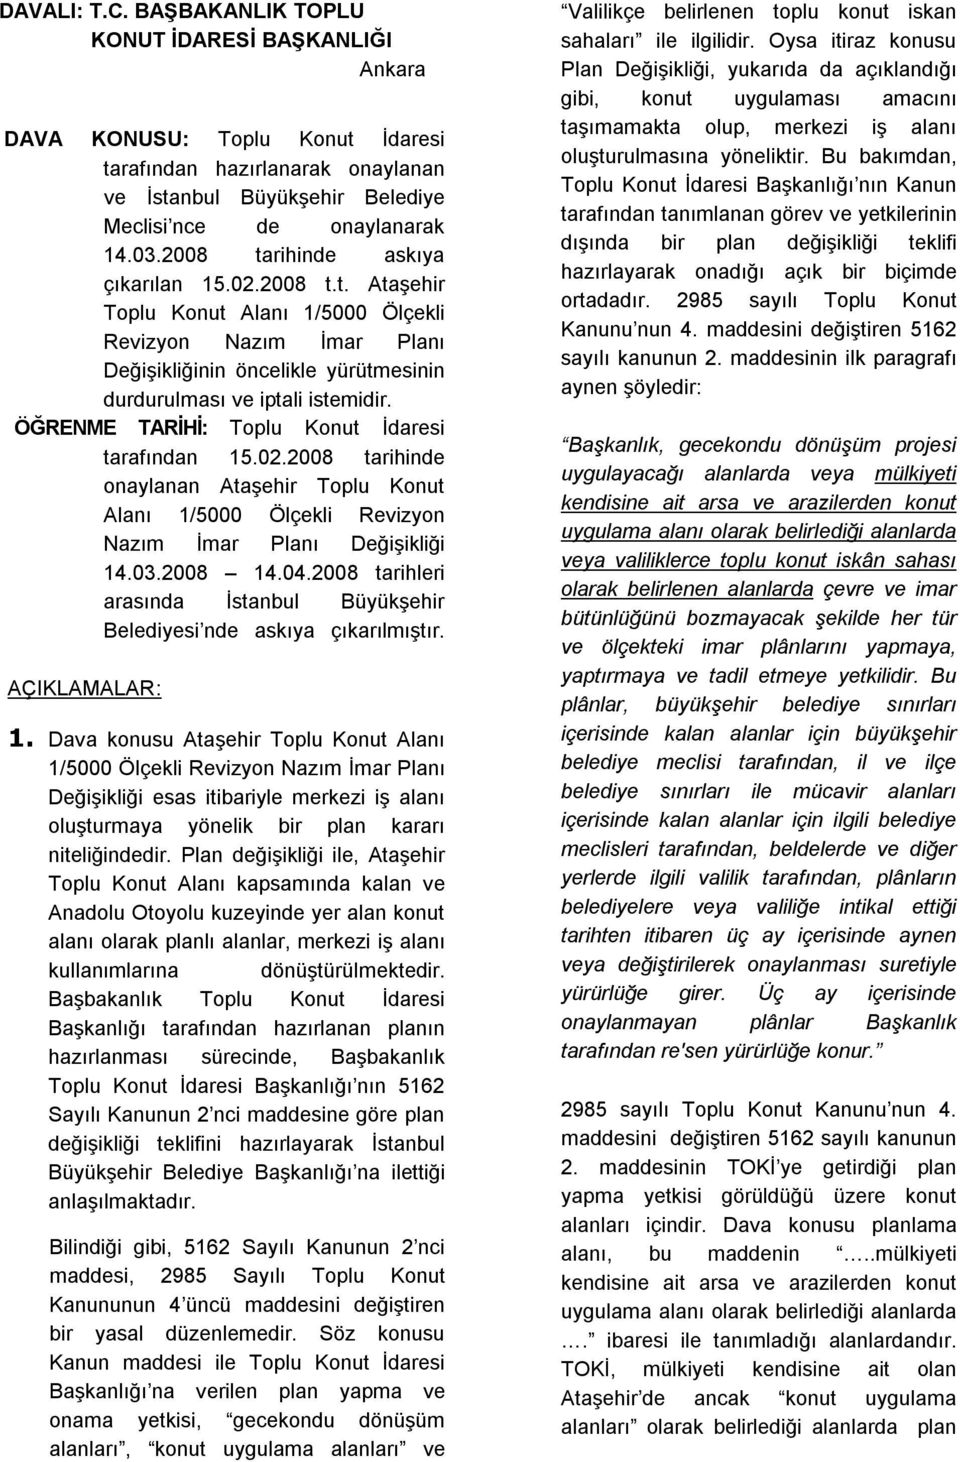 ÖĞRENME TARİHİ: Toplu Konut İdaresi tarafından 15.02.2008 tarihinde onaylanan Ataşehir Toplu Konut Alanı 1/5000 Ölçekli Revizyon Nazım İmar Planı Değişikliği 14.03.2008 14.04.